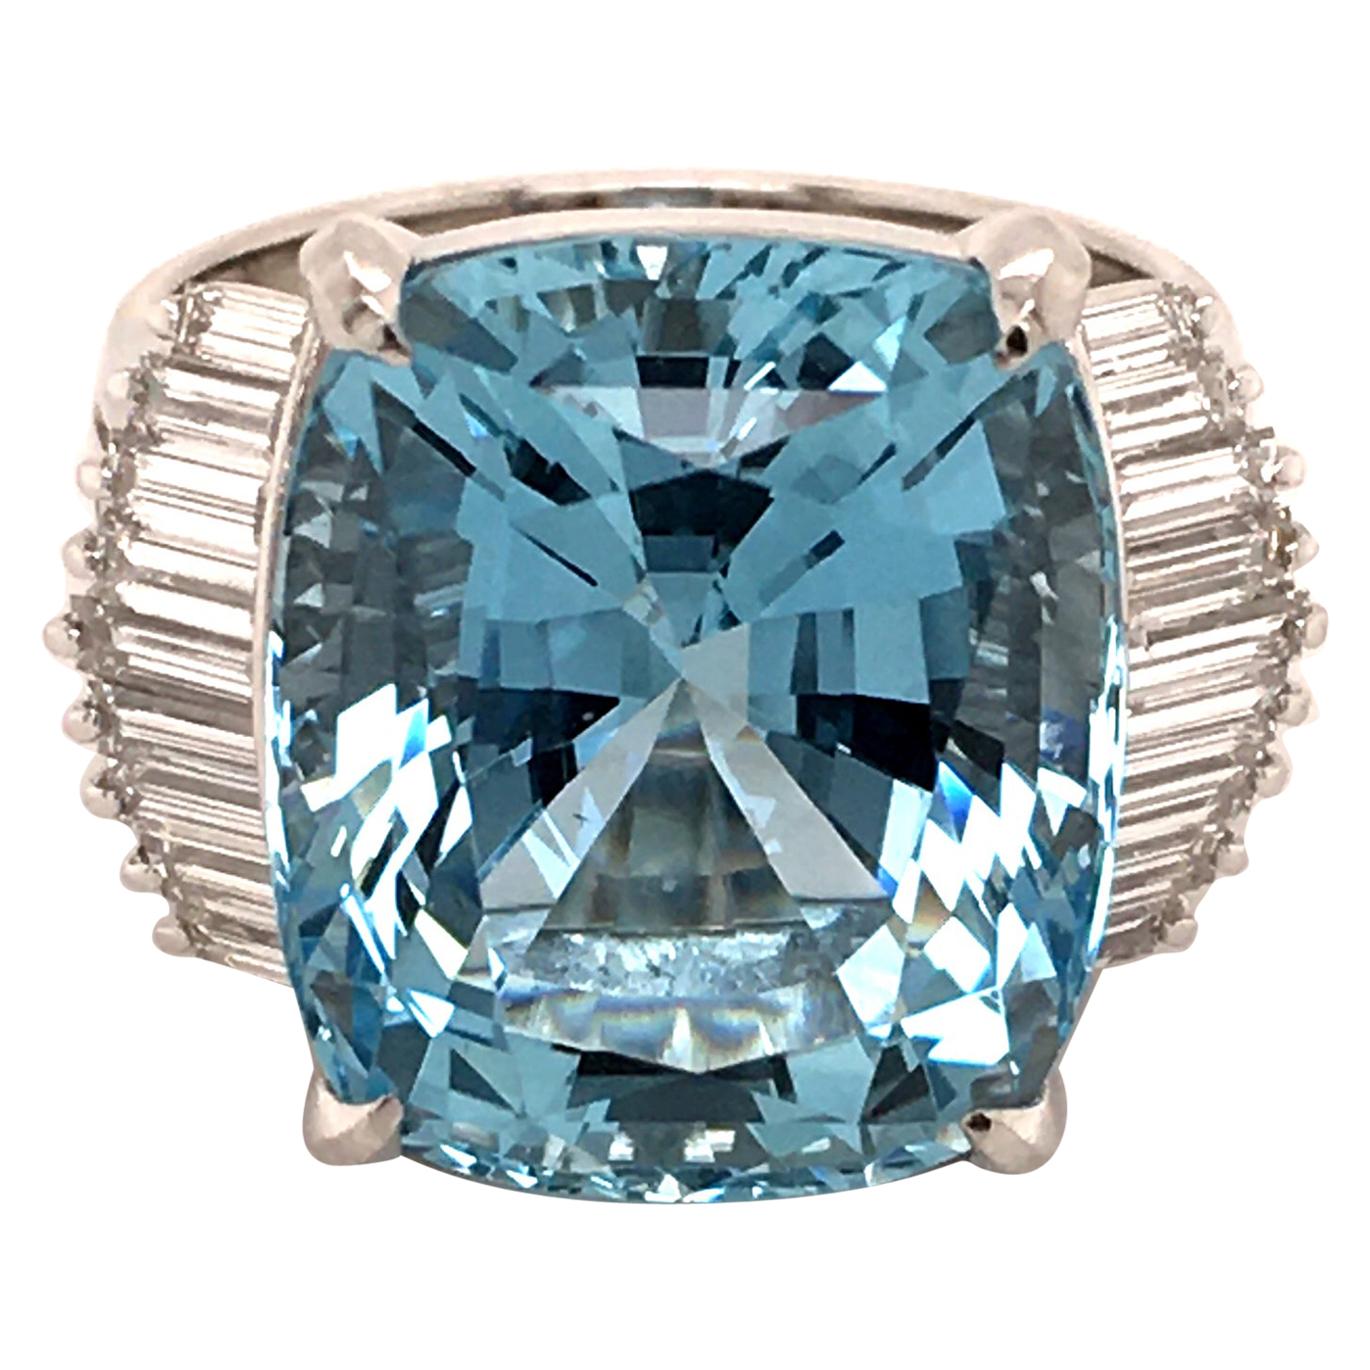 11.89 Carat Aquamarine Ring with Diamonds in Platinum